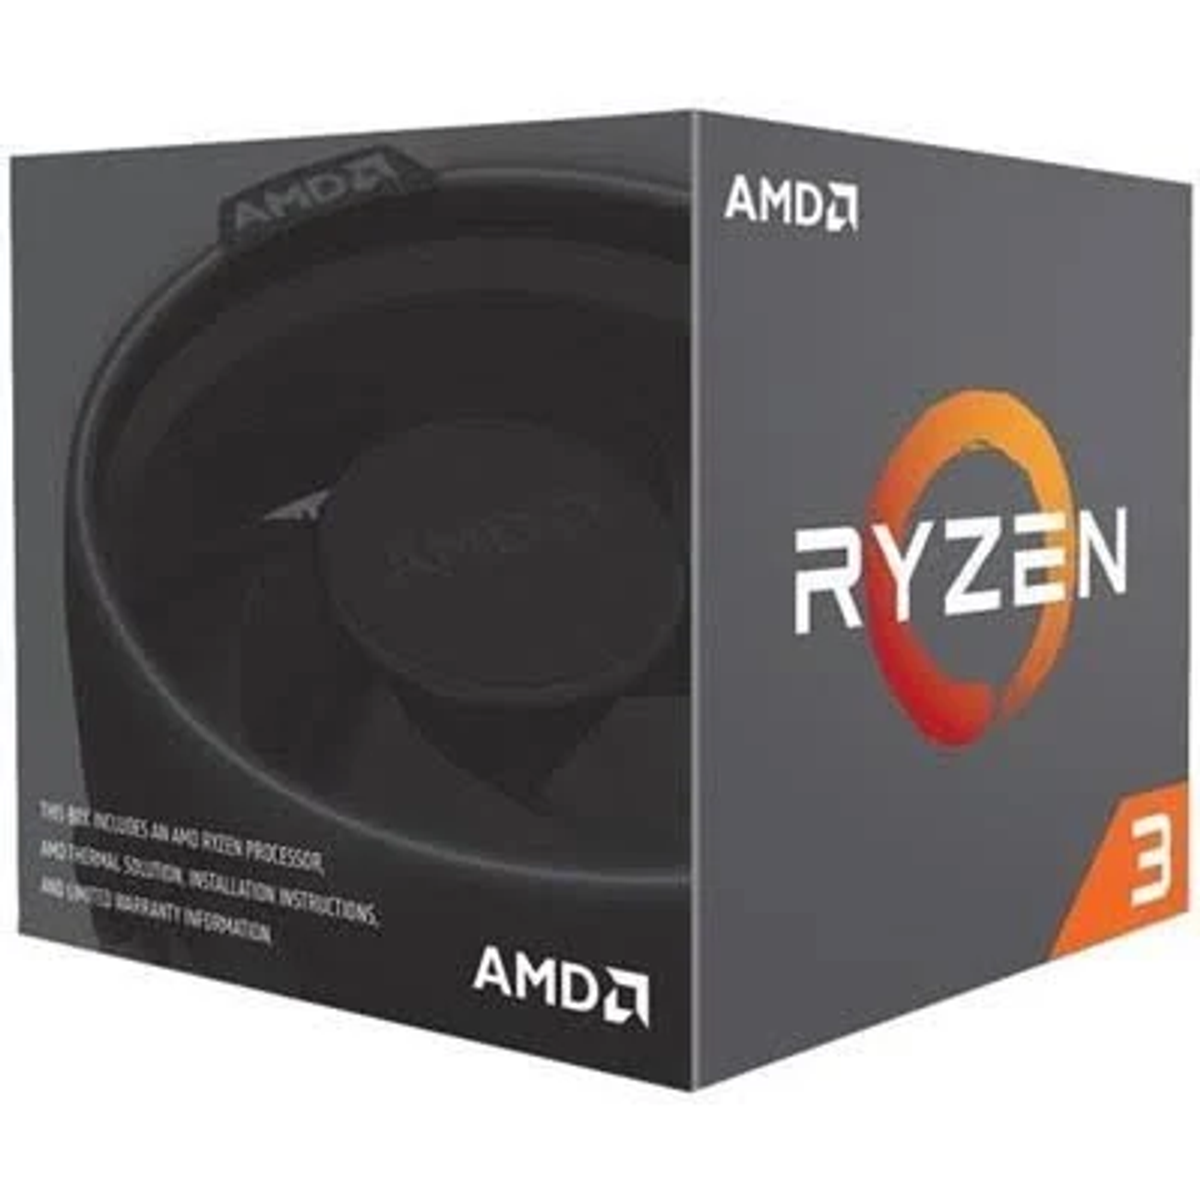 AMD 3200G Prozessor mit Mehrfarbig Boxed-Kühler